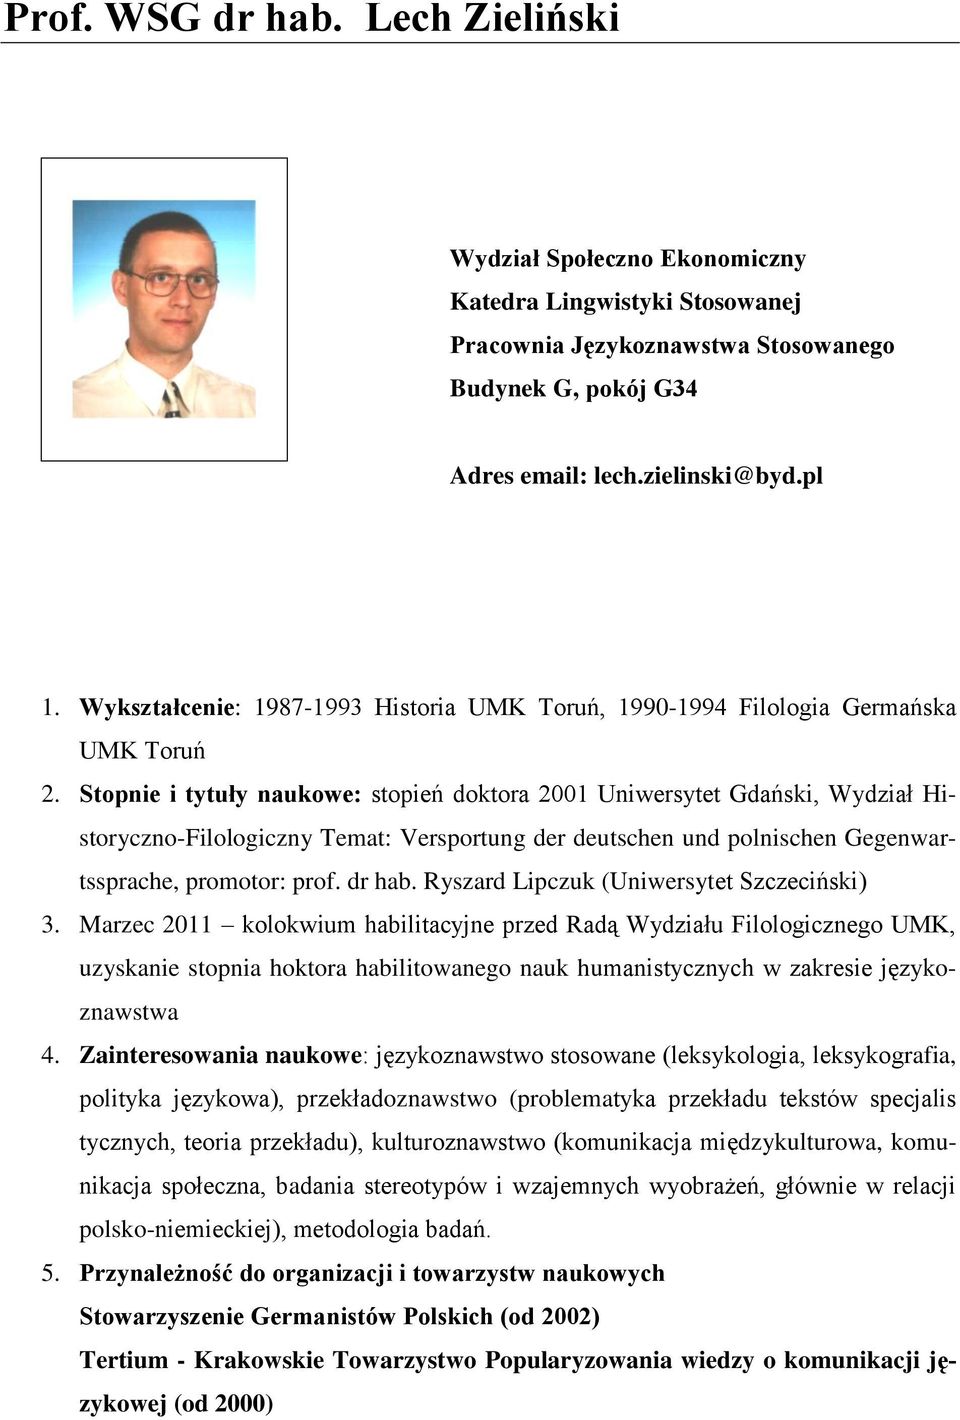 Stopnie i tytuły naukowe: stopień doktora 2001 Uniwersytet Gdański, Wydział Historyczno-Filologiczny Temat: Versportung der deutschen und polnischen Gegenwartssprache, promotor: prof. dr hab.